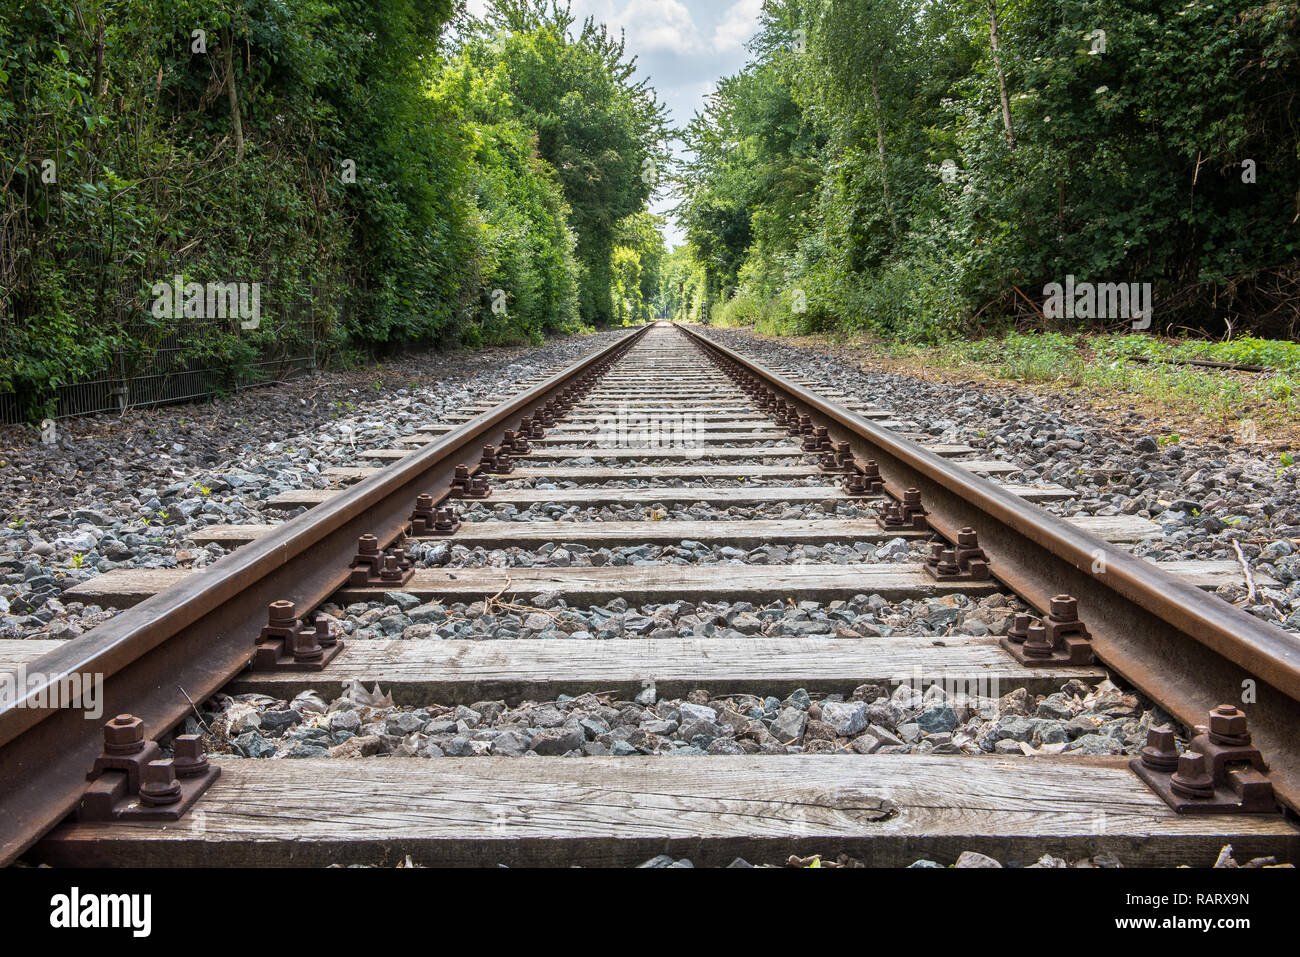 Die Reise ist das Ziel - Bahngleise mit Fluchtpunkt in der Perspektive  Stockfotografie - Alamy